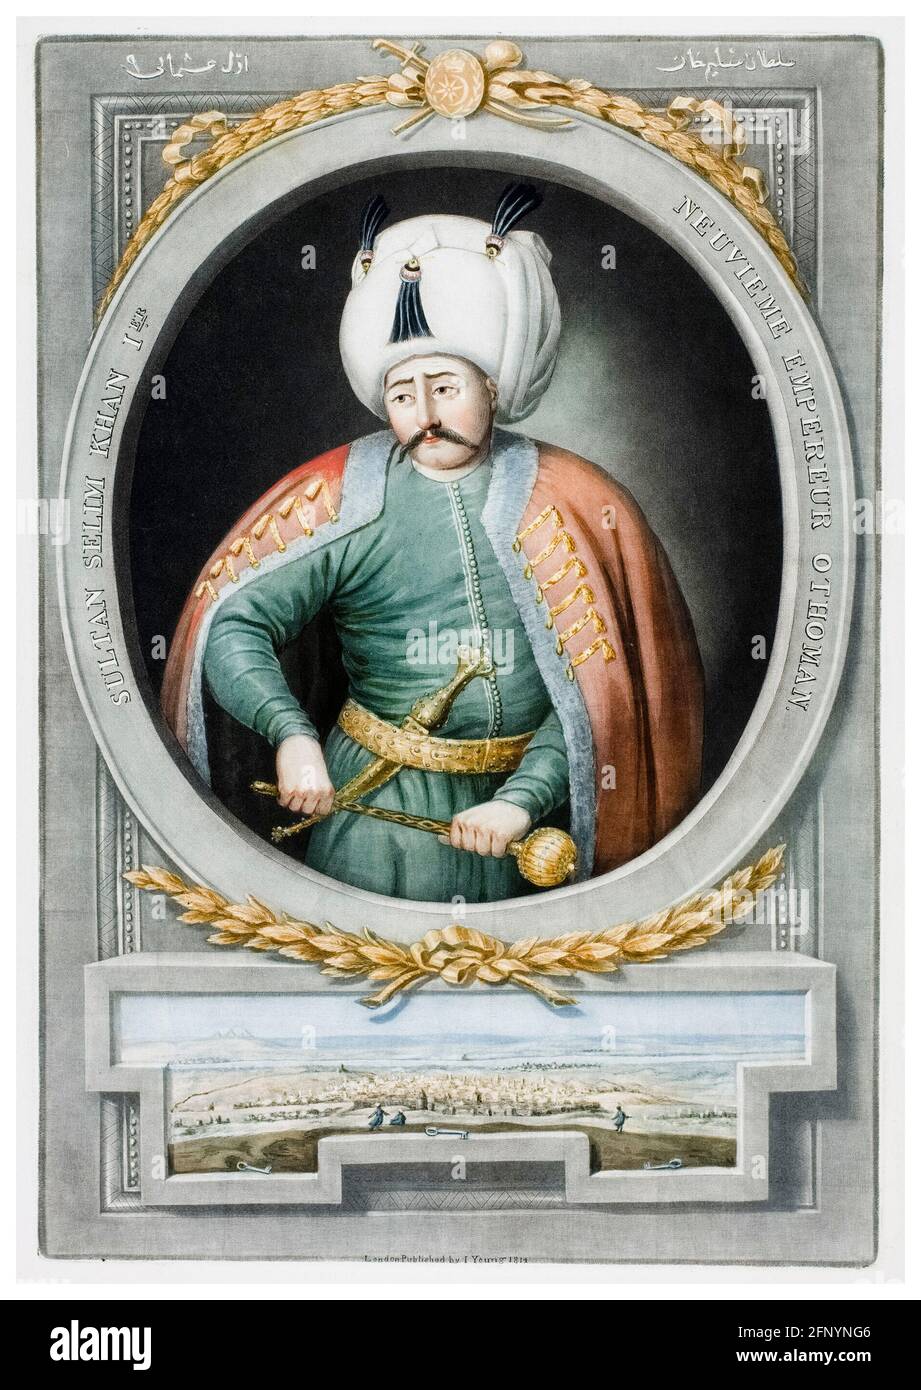 Sultan Selim I Banque d'image et photos - Alamy